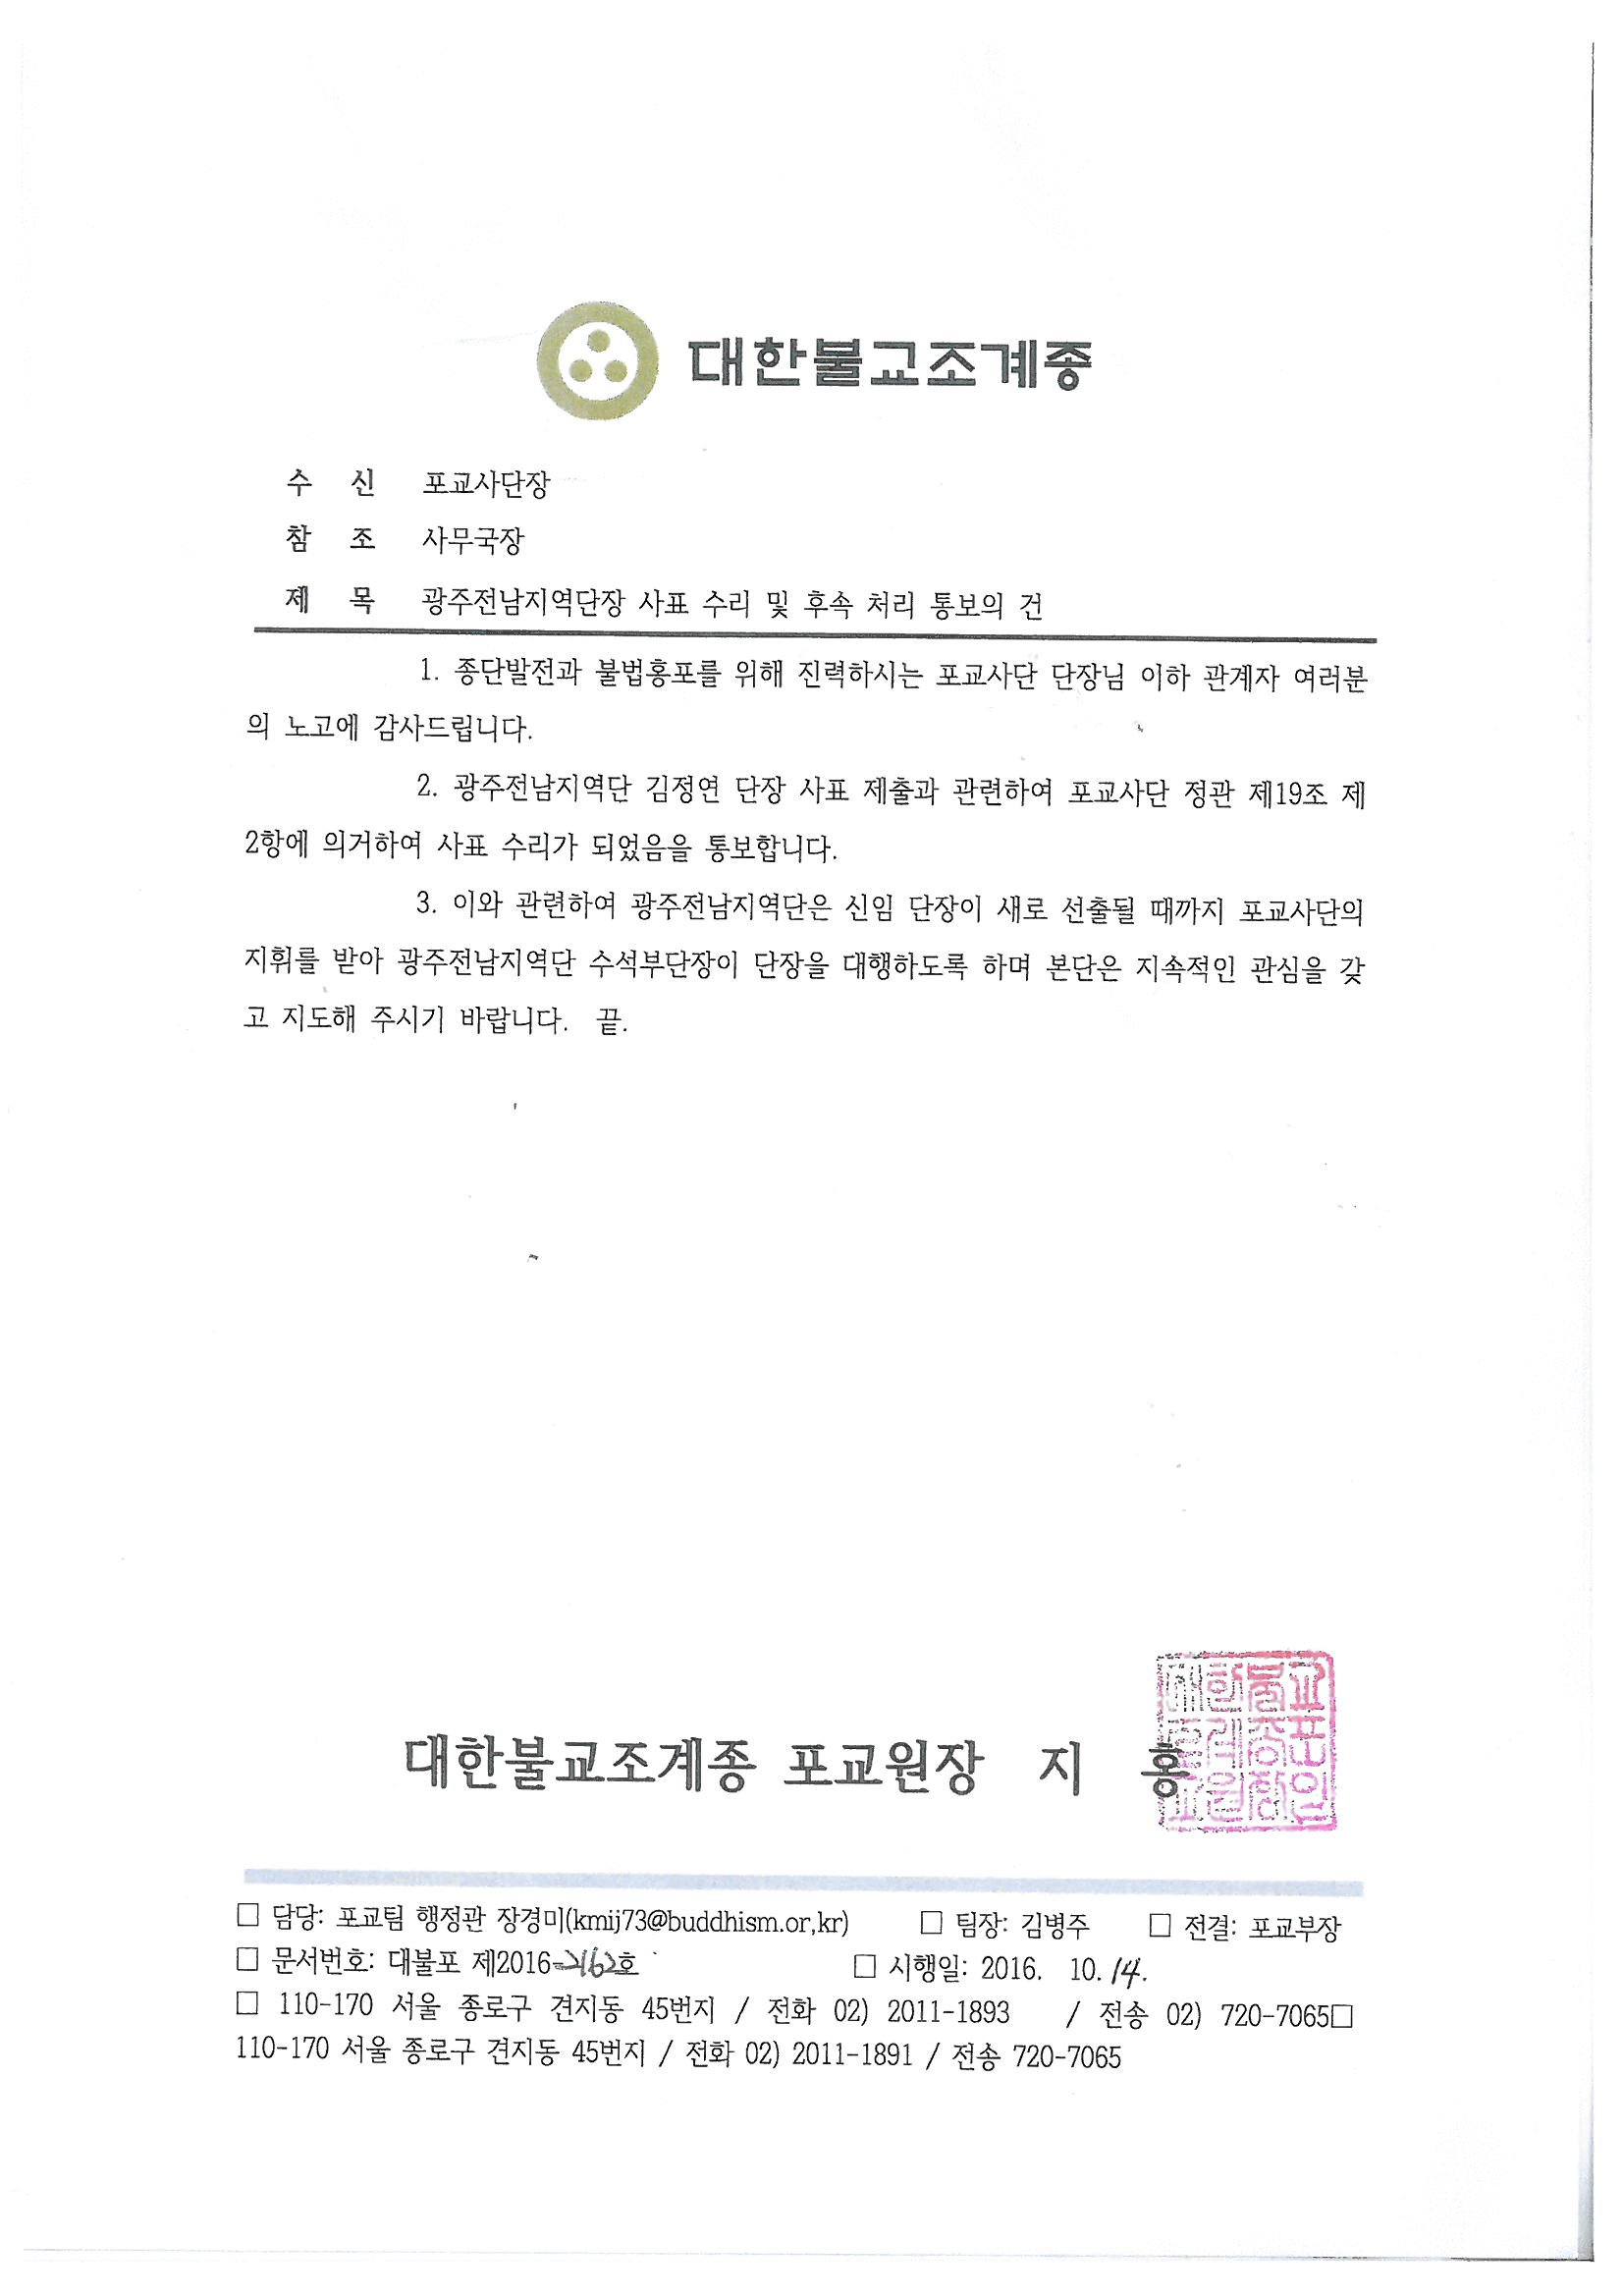 포교원공문-광주전남지역단장 사표수리(10.14).jpg